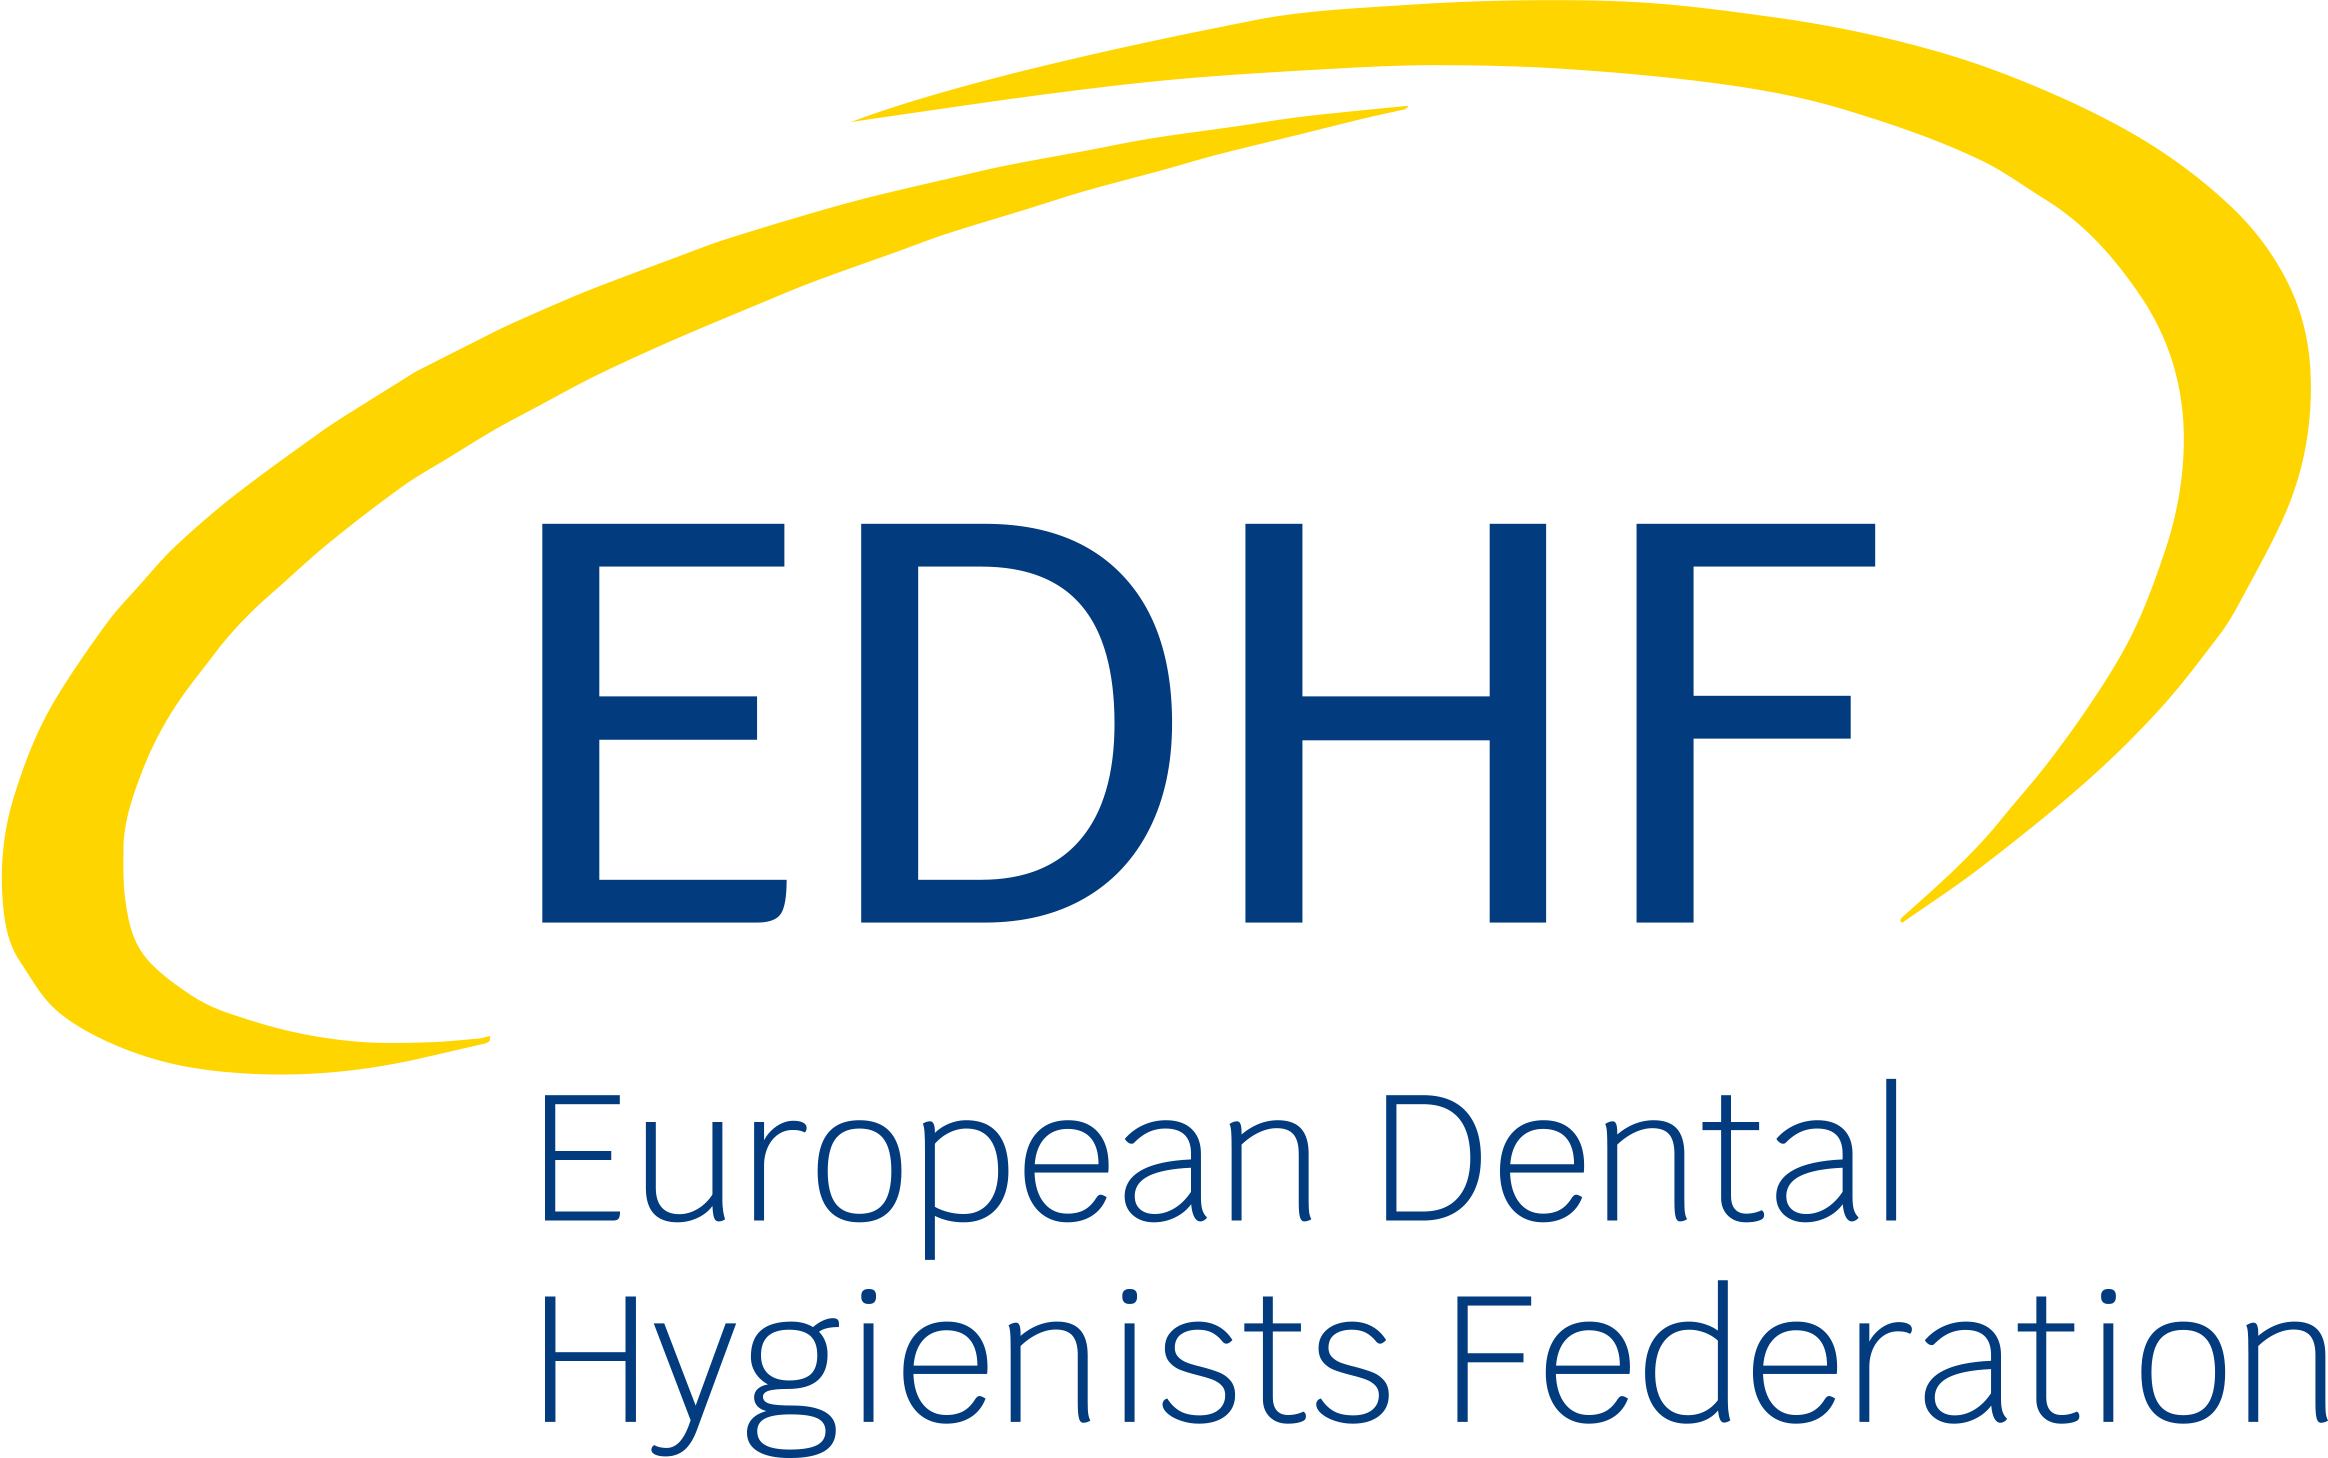 European Dental Hygienist Federation